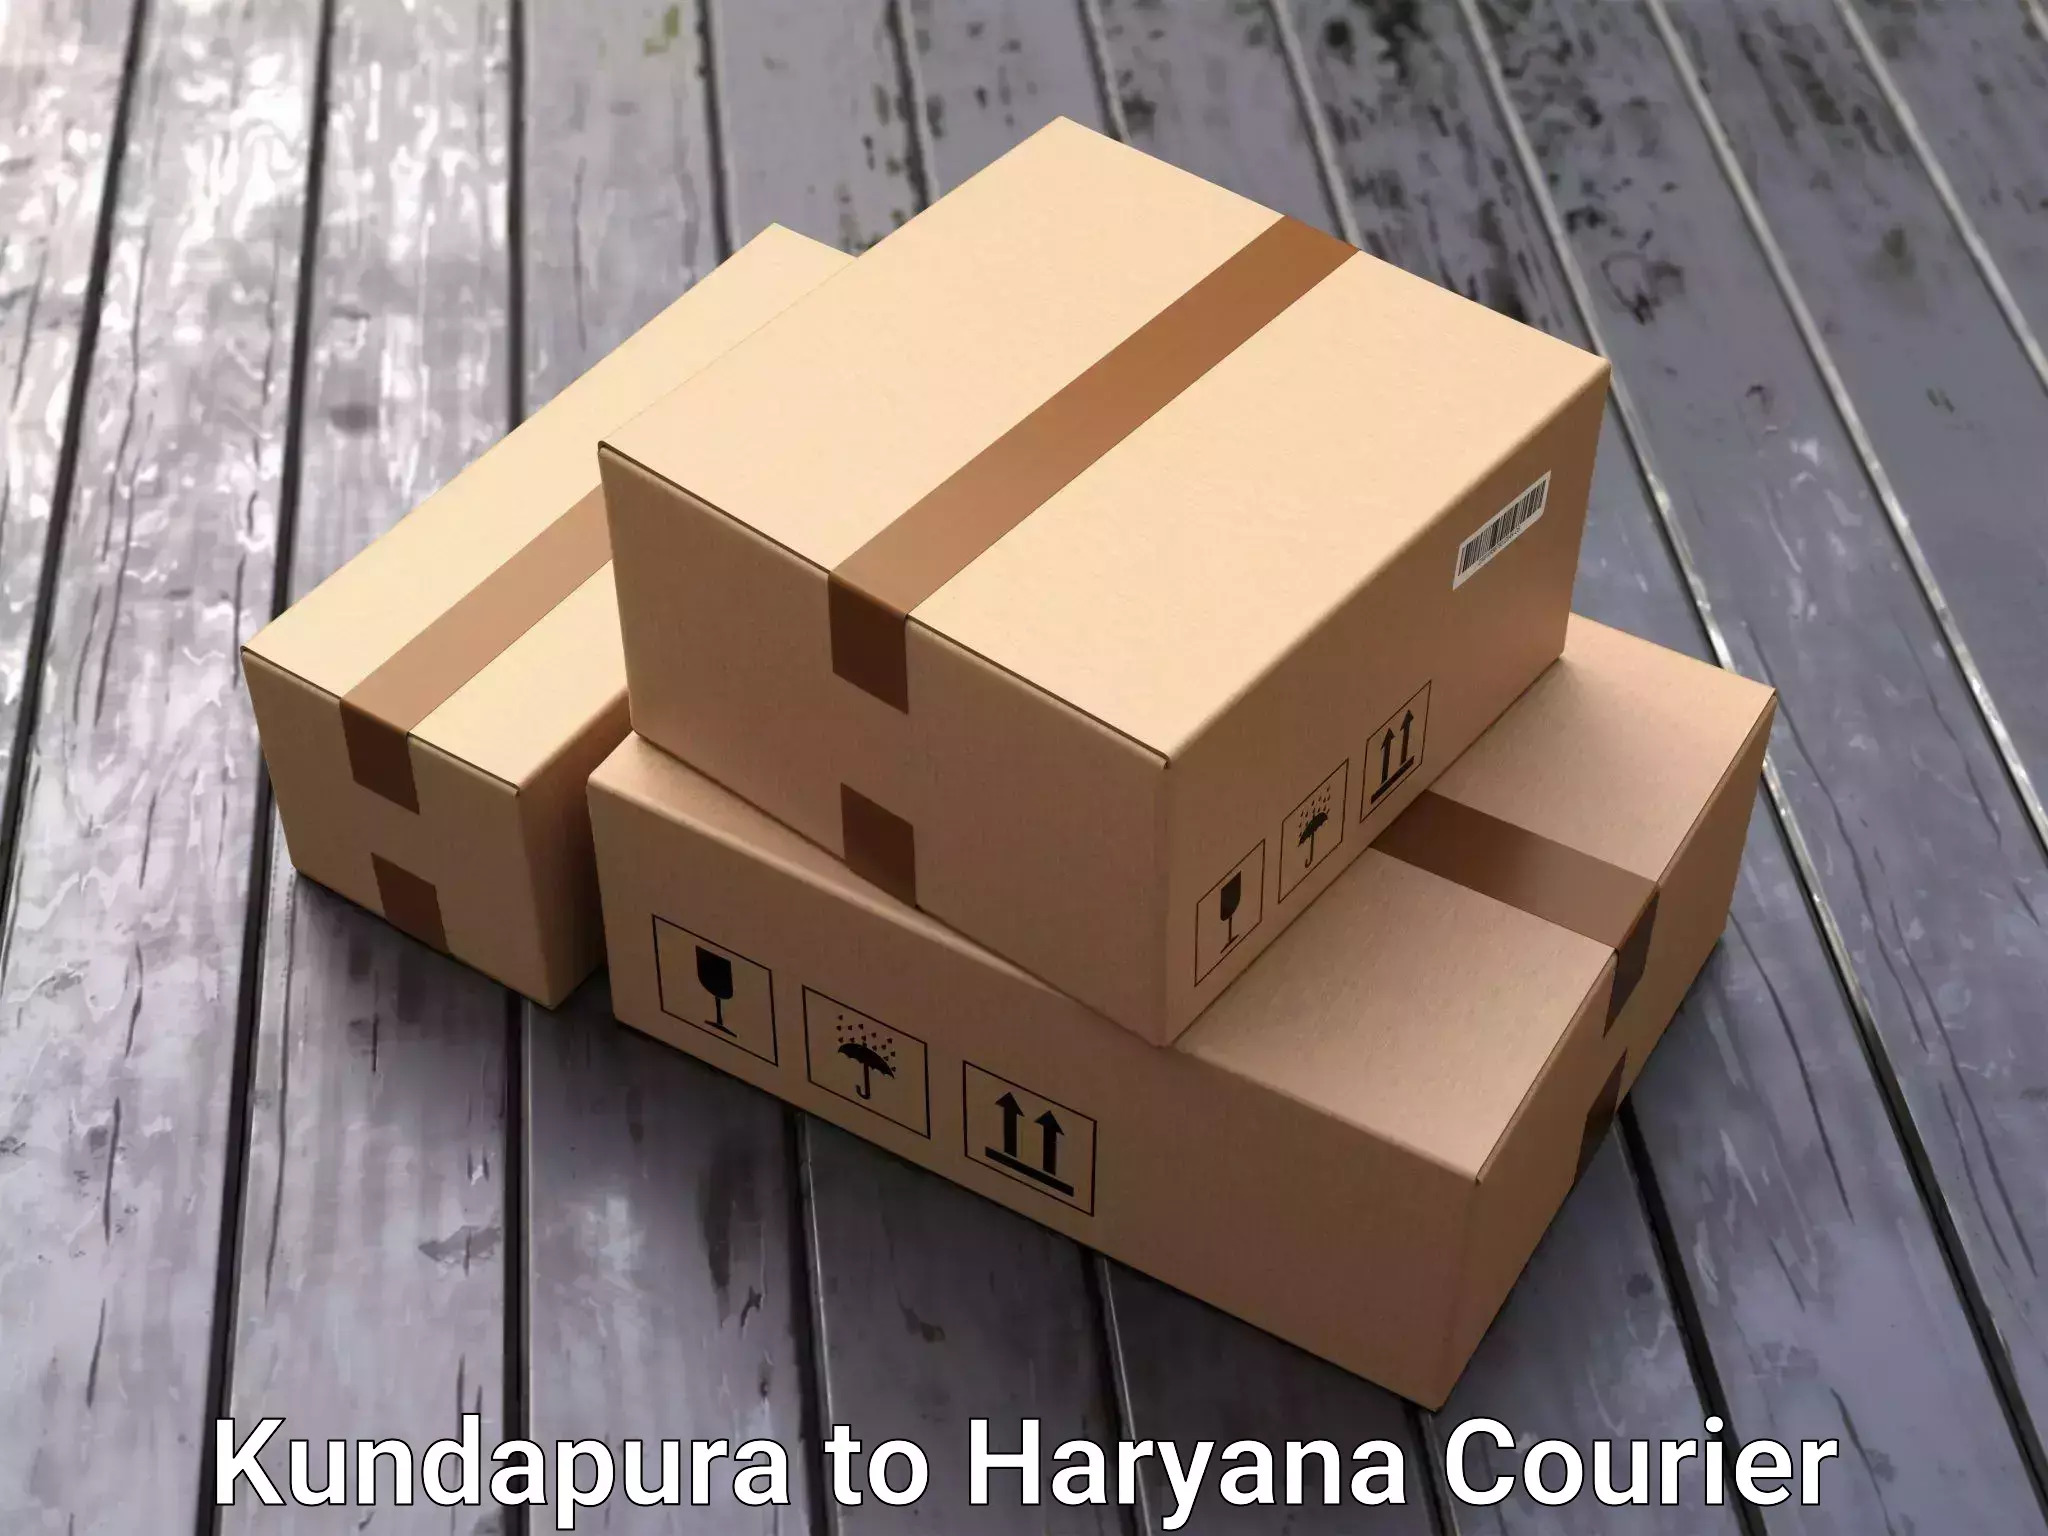 Furniture moving experts Kundapura to Haryana